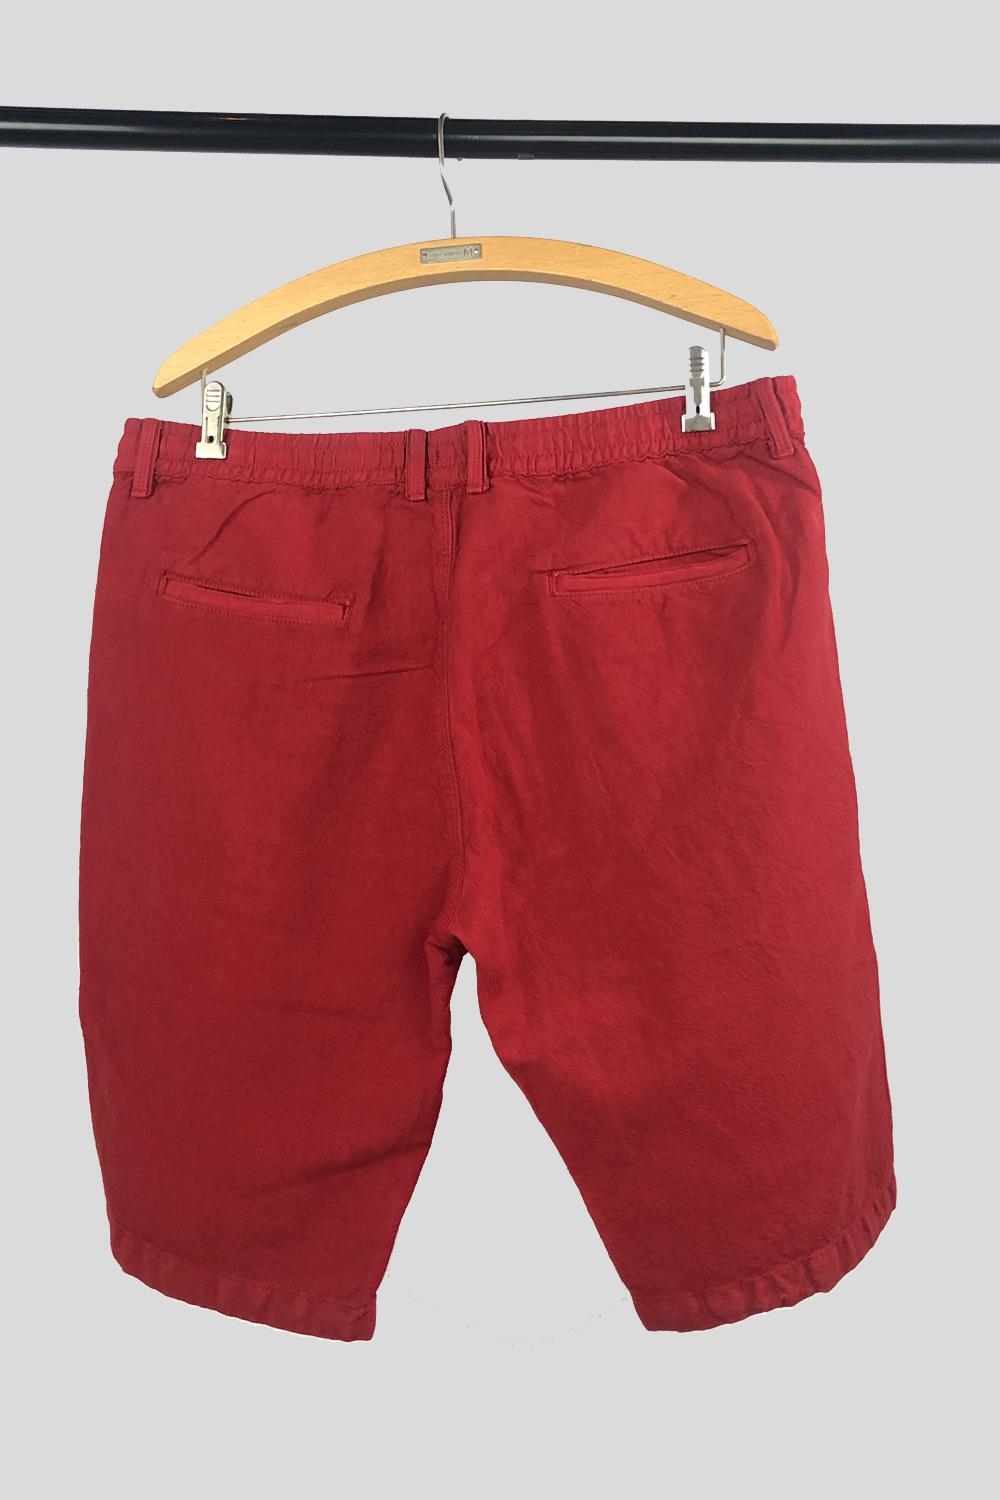 Pantalón corto lino rojo | 1604HPBR00/005